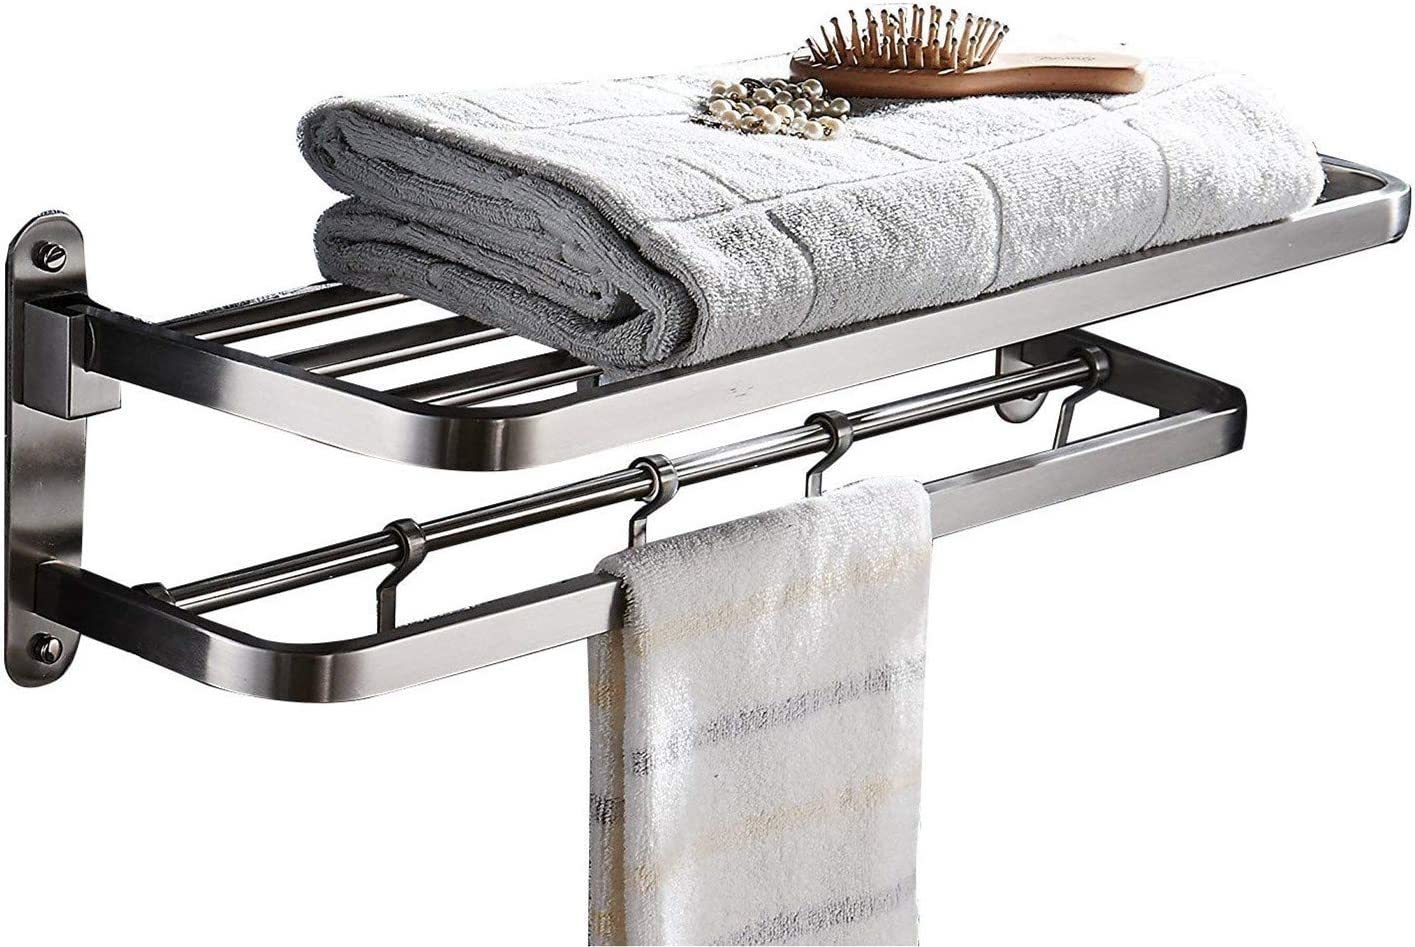 Primary image for Ello&Allo Stainless Steel Towel Racks For Bathroom Shelf Double Towel Bar Holder